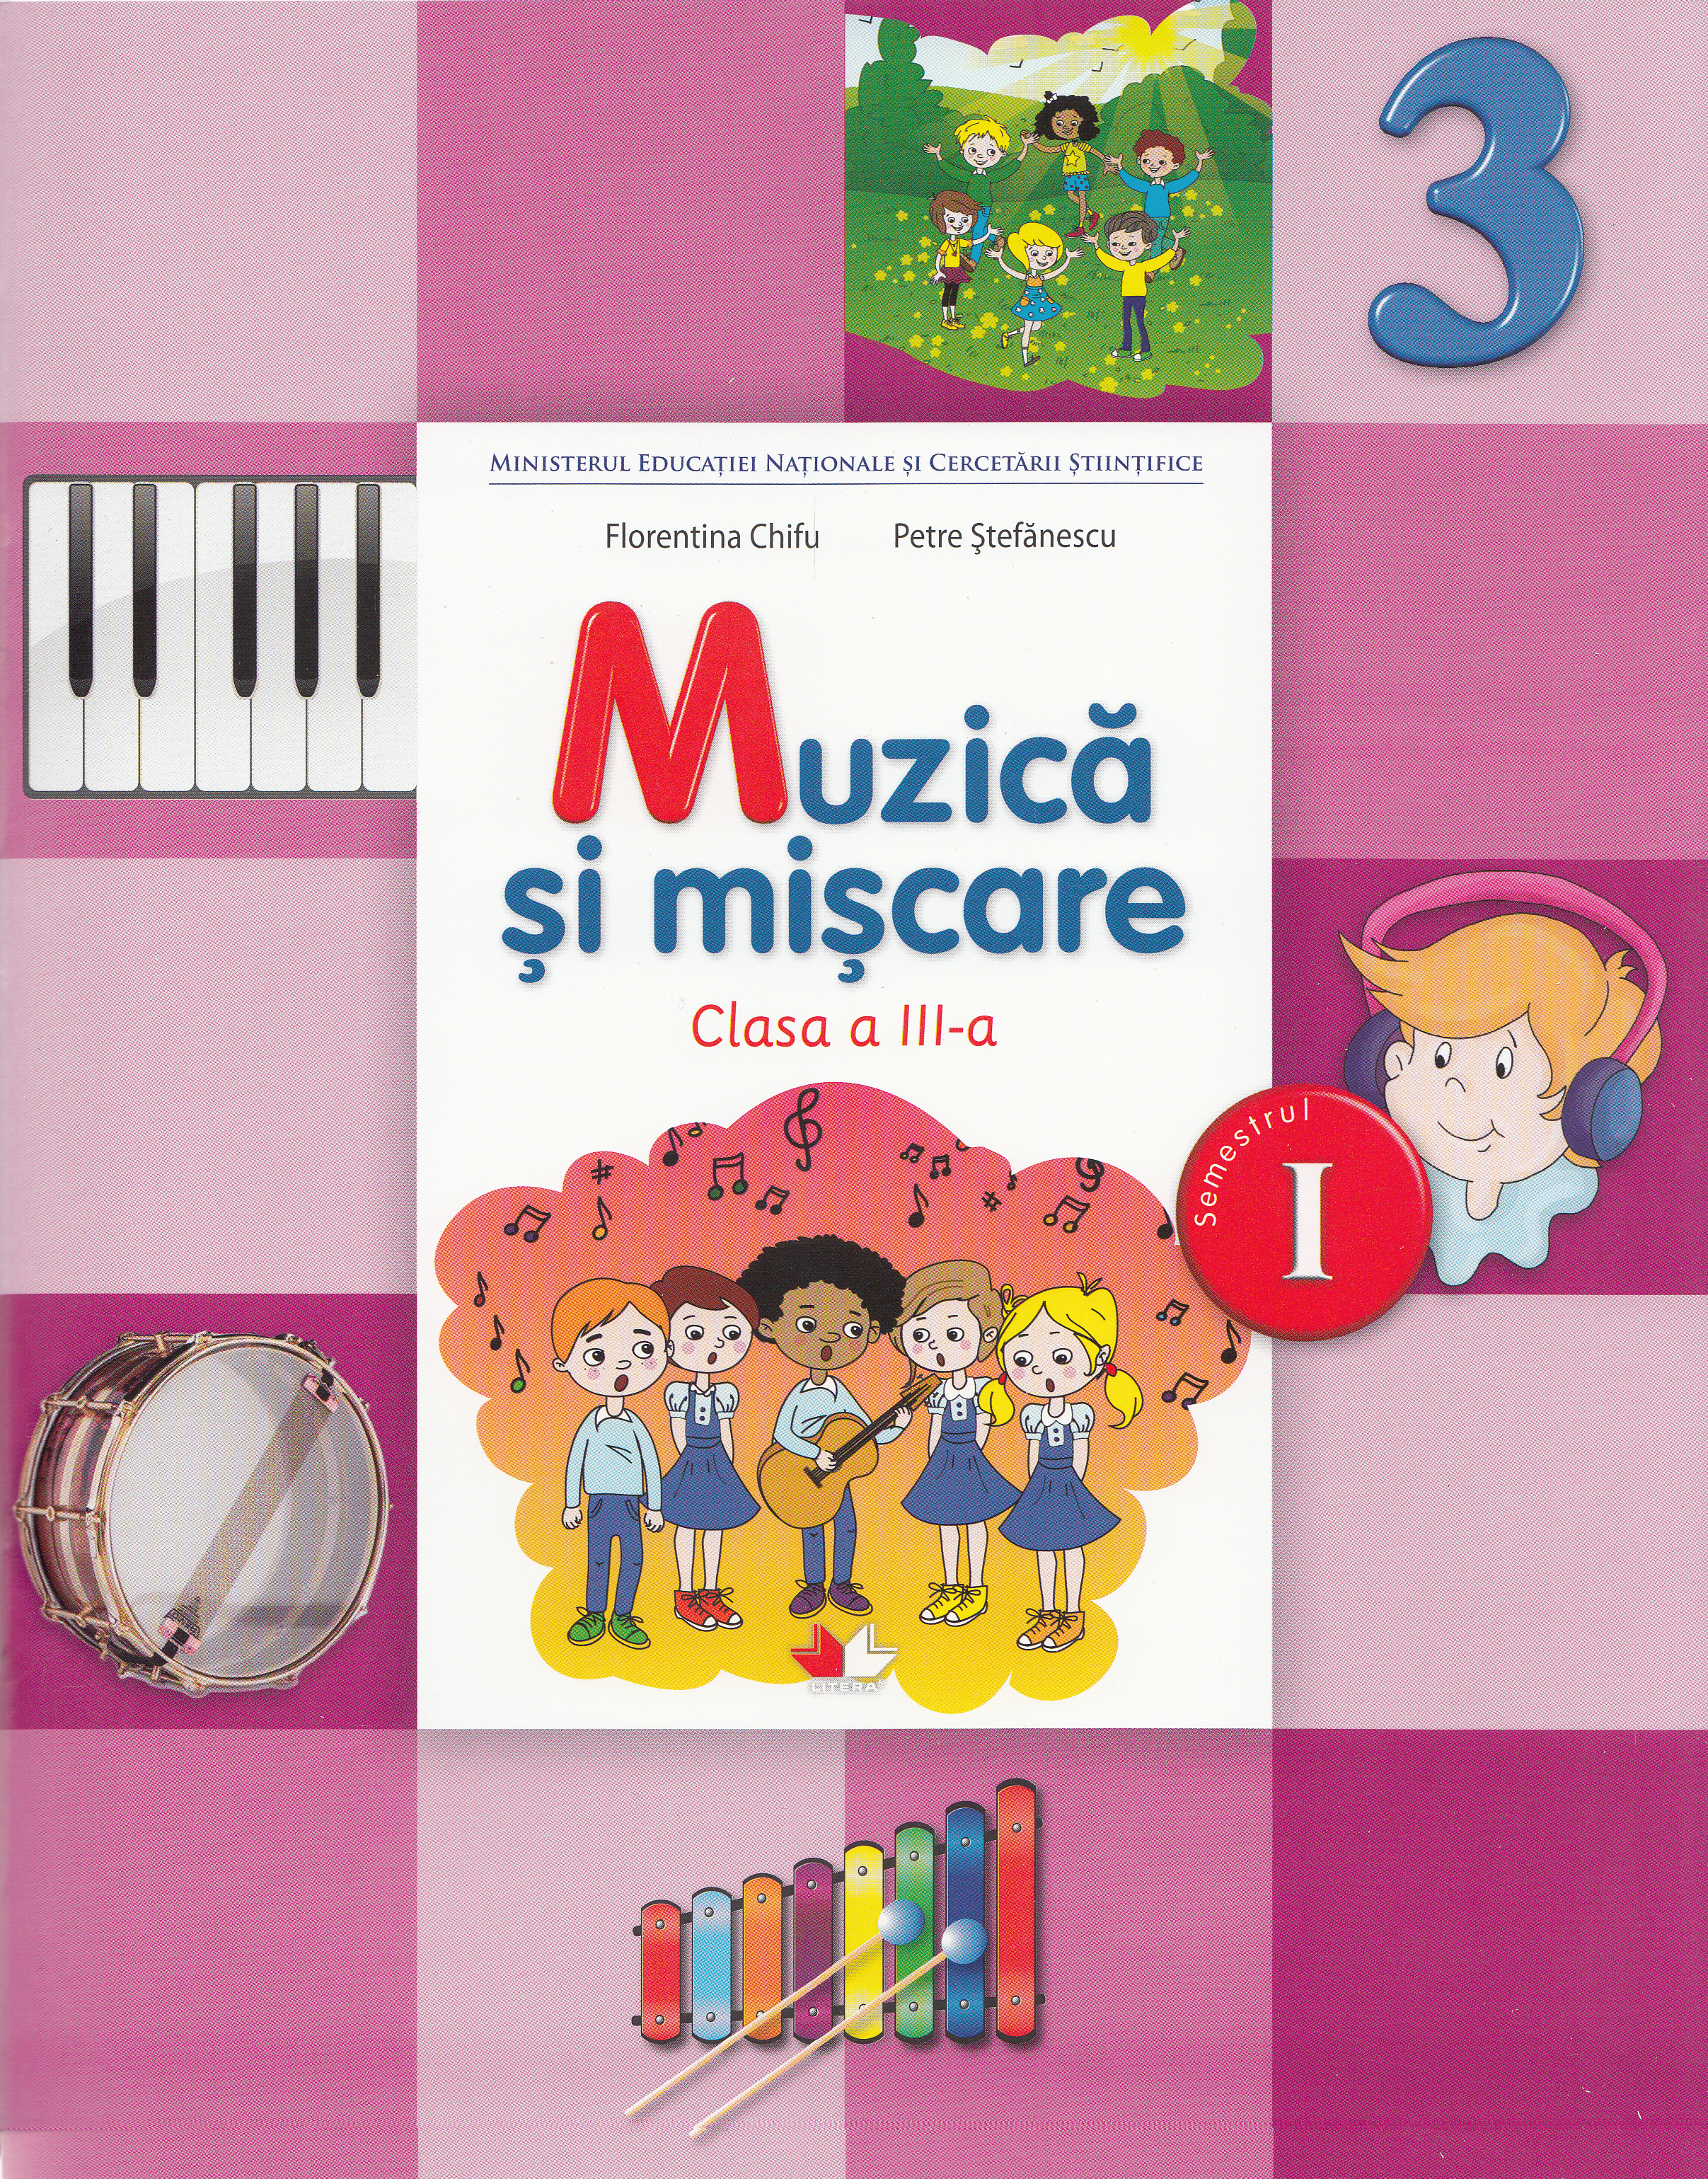 Muzica si miscare - Clasa 3 Sem.1 - Manual + CD - Florentina Chifu, Petre Stefanescu